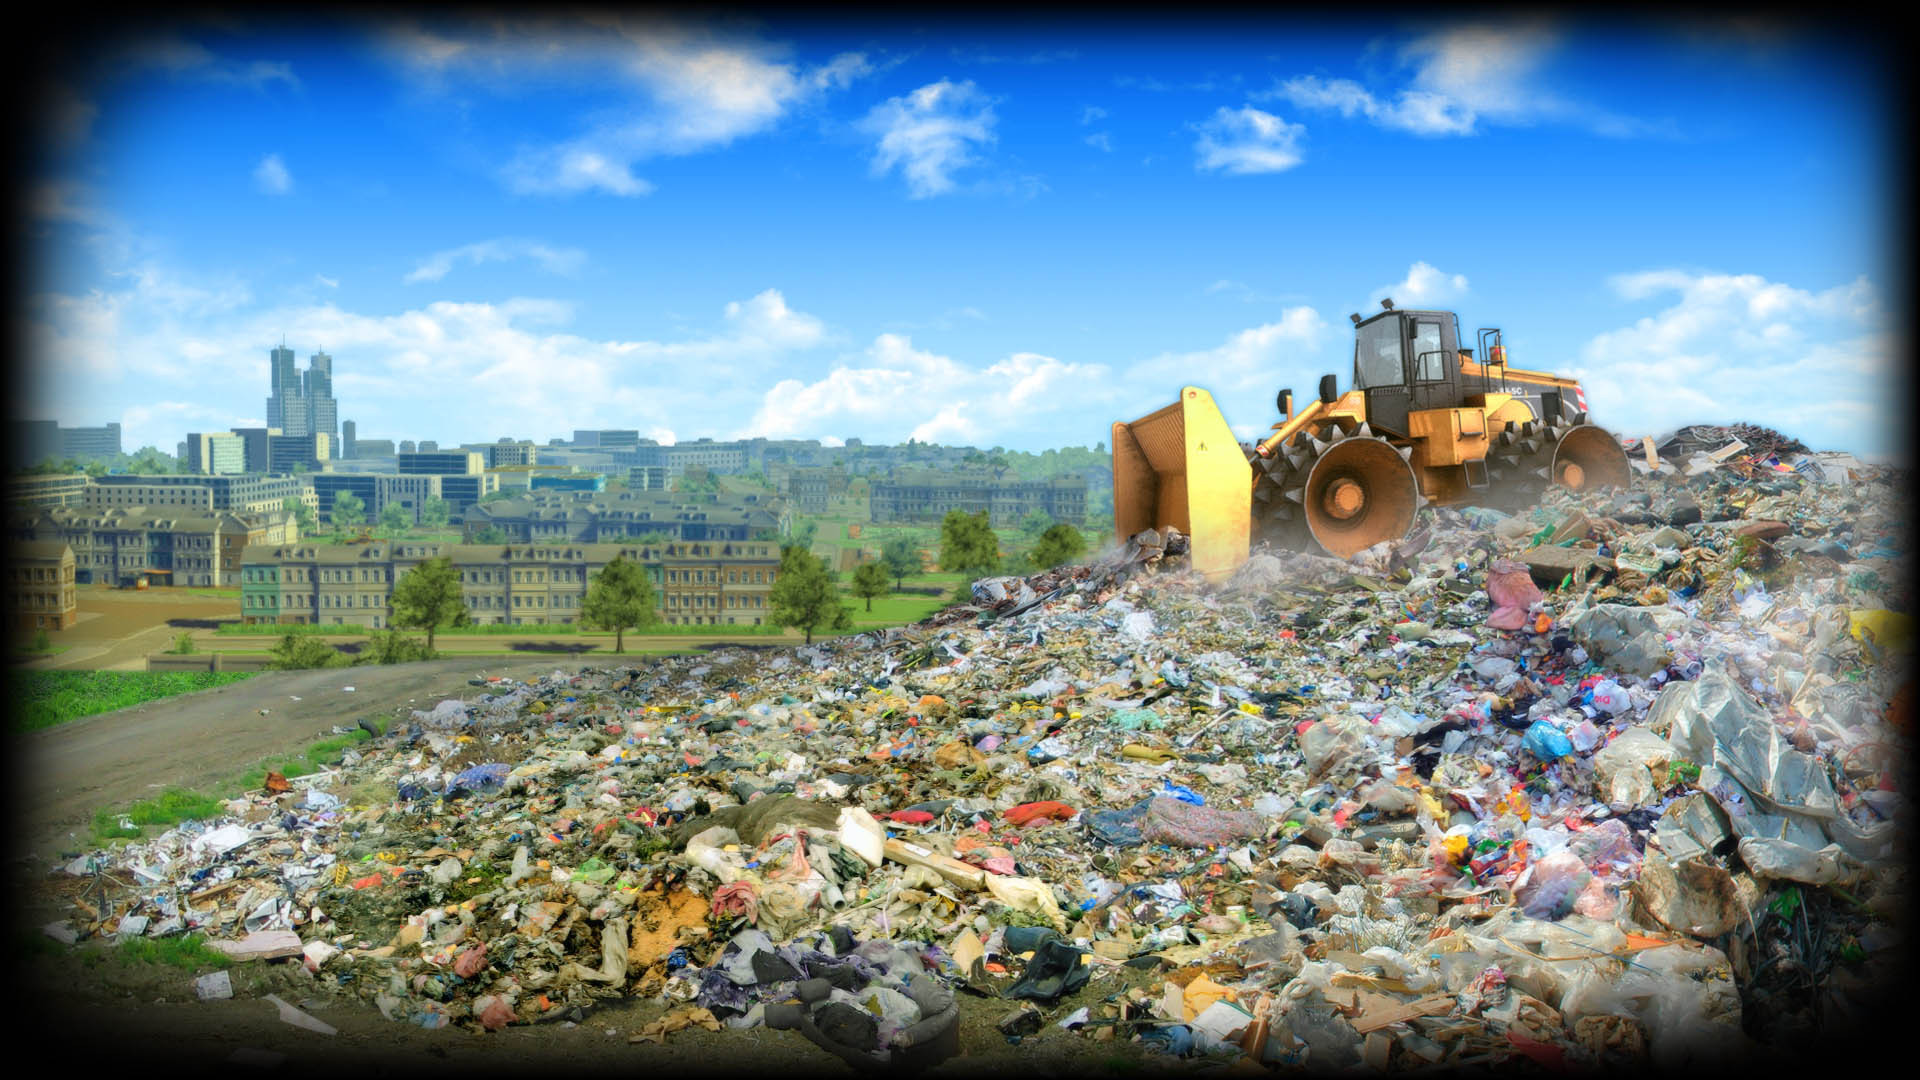 Cleaning up the mess. Переработка отходов обои. Recycling game. Обои Trash. Отходы от предприятий 1920 x 1080.